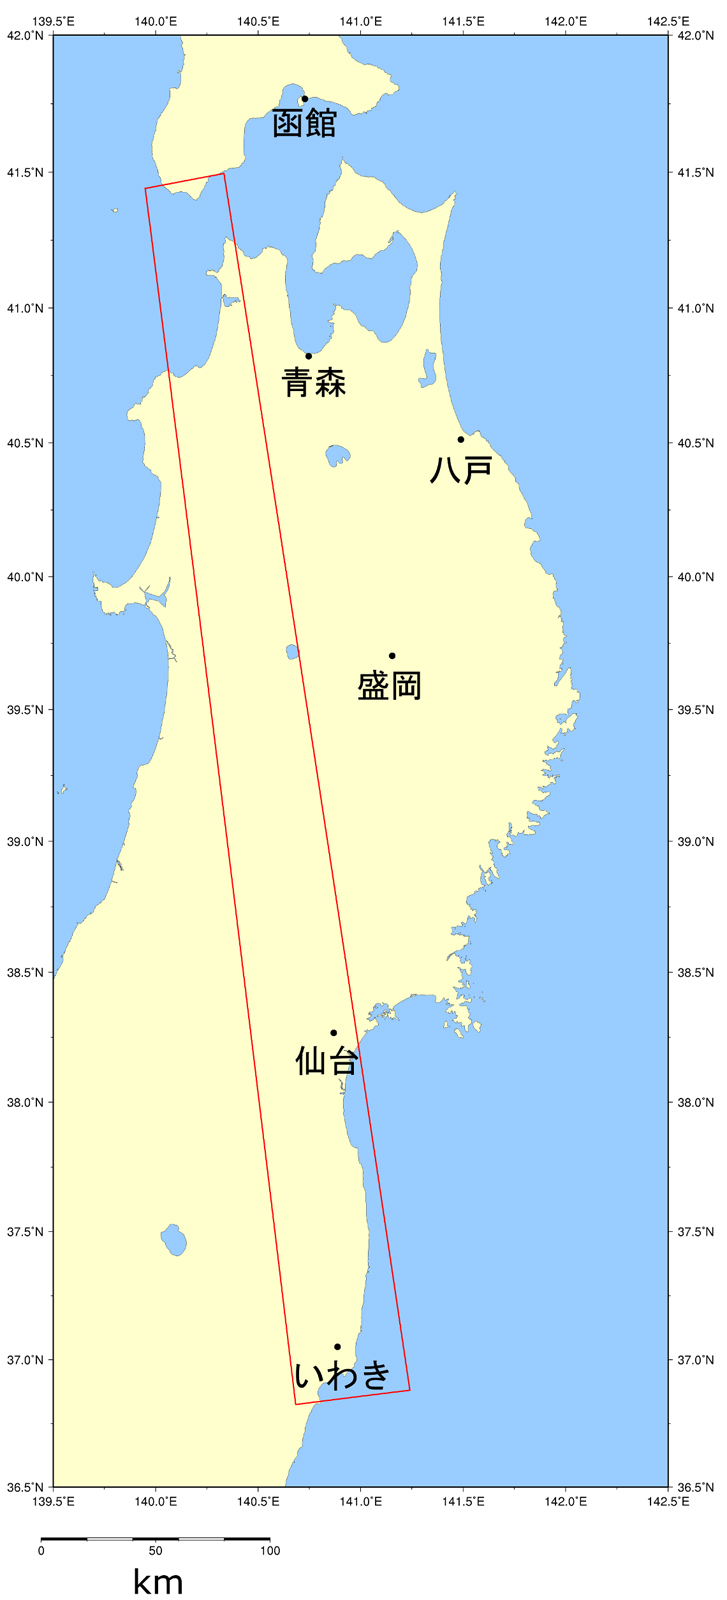 図1: 2011年3月13日観測のデータから抽出した宮城県の浸水域